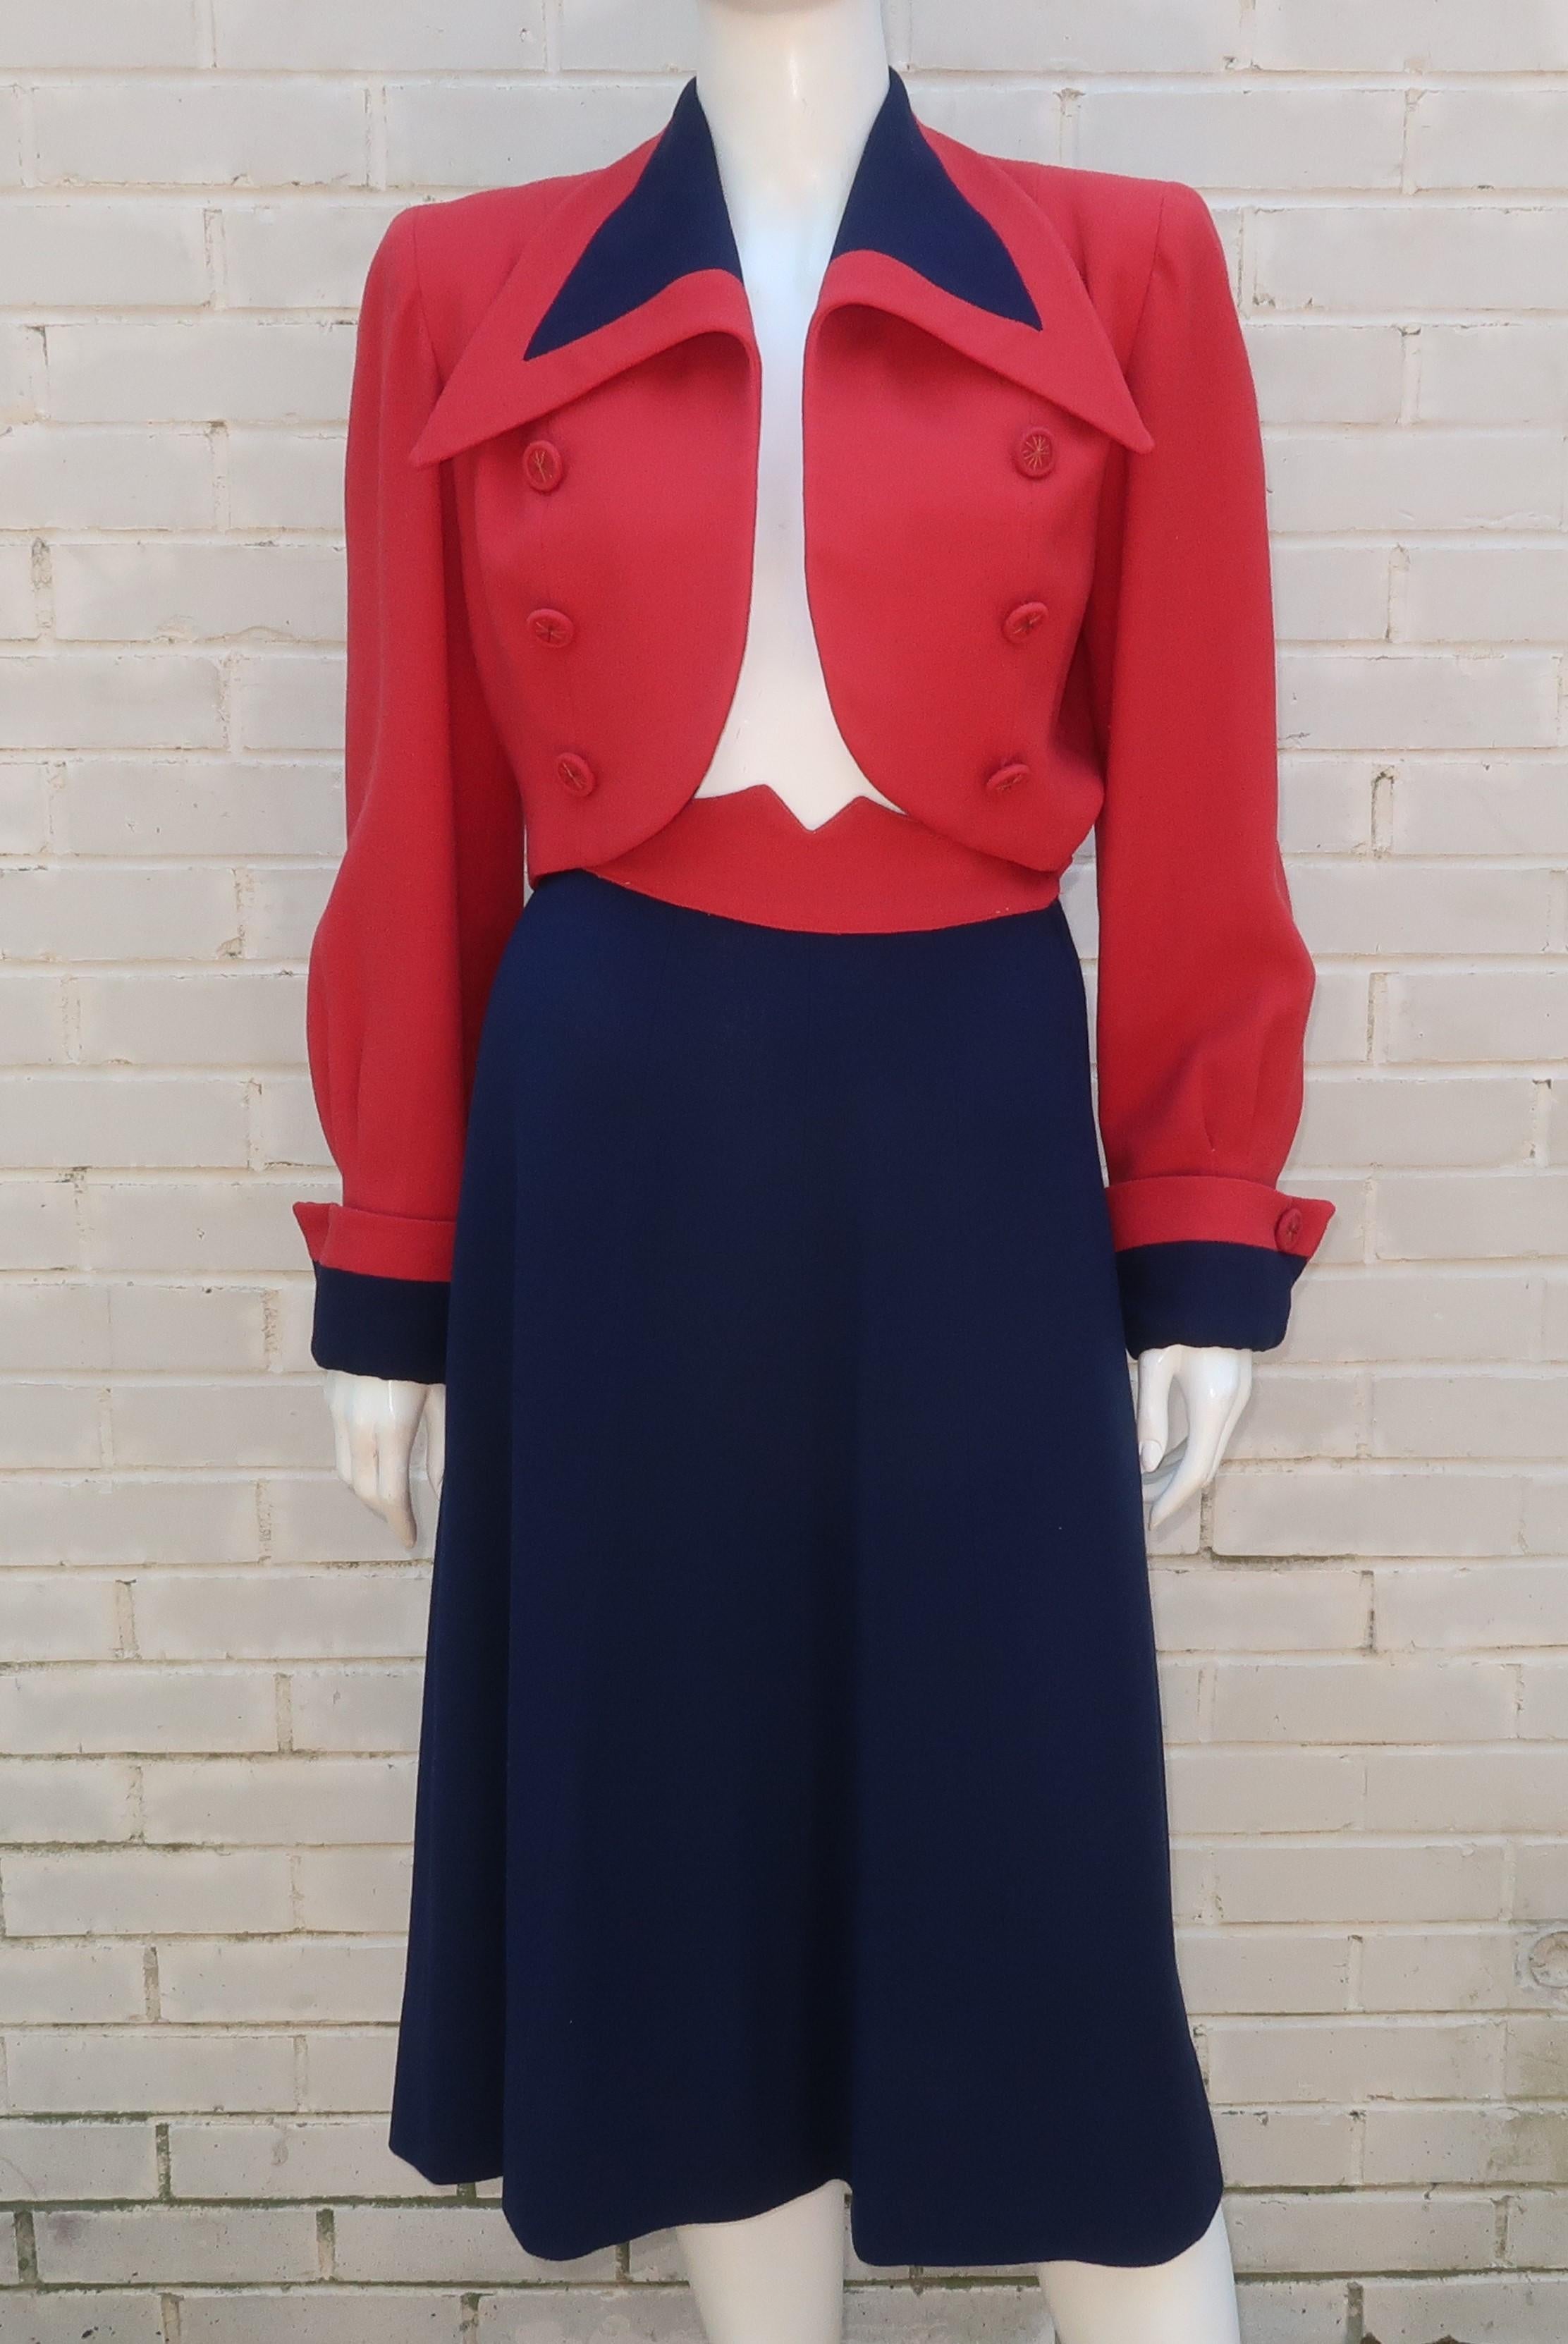 tenue patriotique des années 1940 en crêpe rouge et bleu avec veste courte.  La veste est une version stylisée d'un look militaire avec un col large et pointu, des épaules exagérées, des poignets retournés et une double rangée de boutons décoratifs.